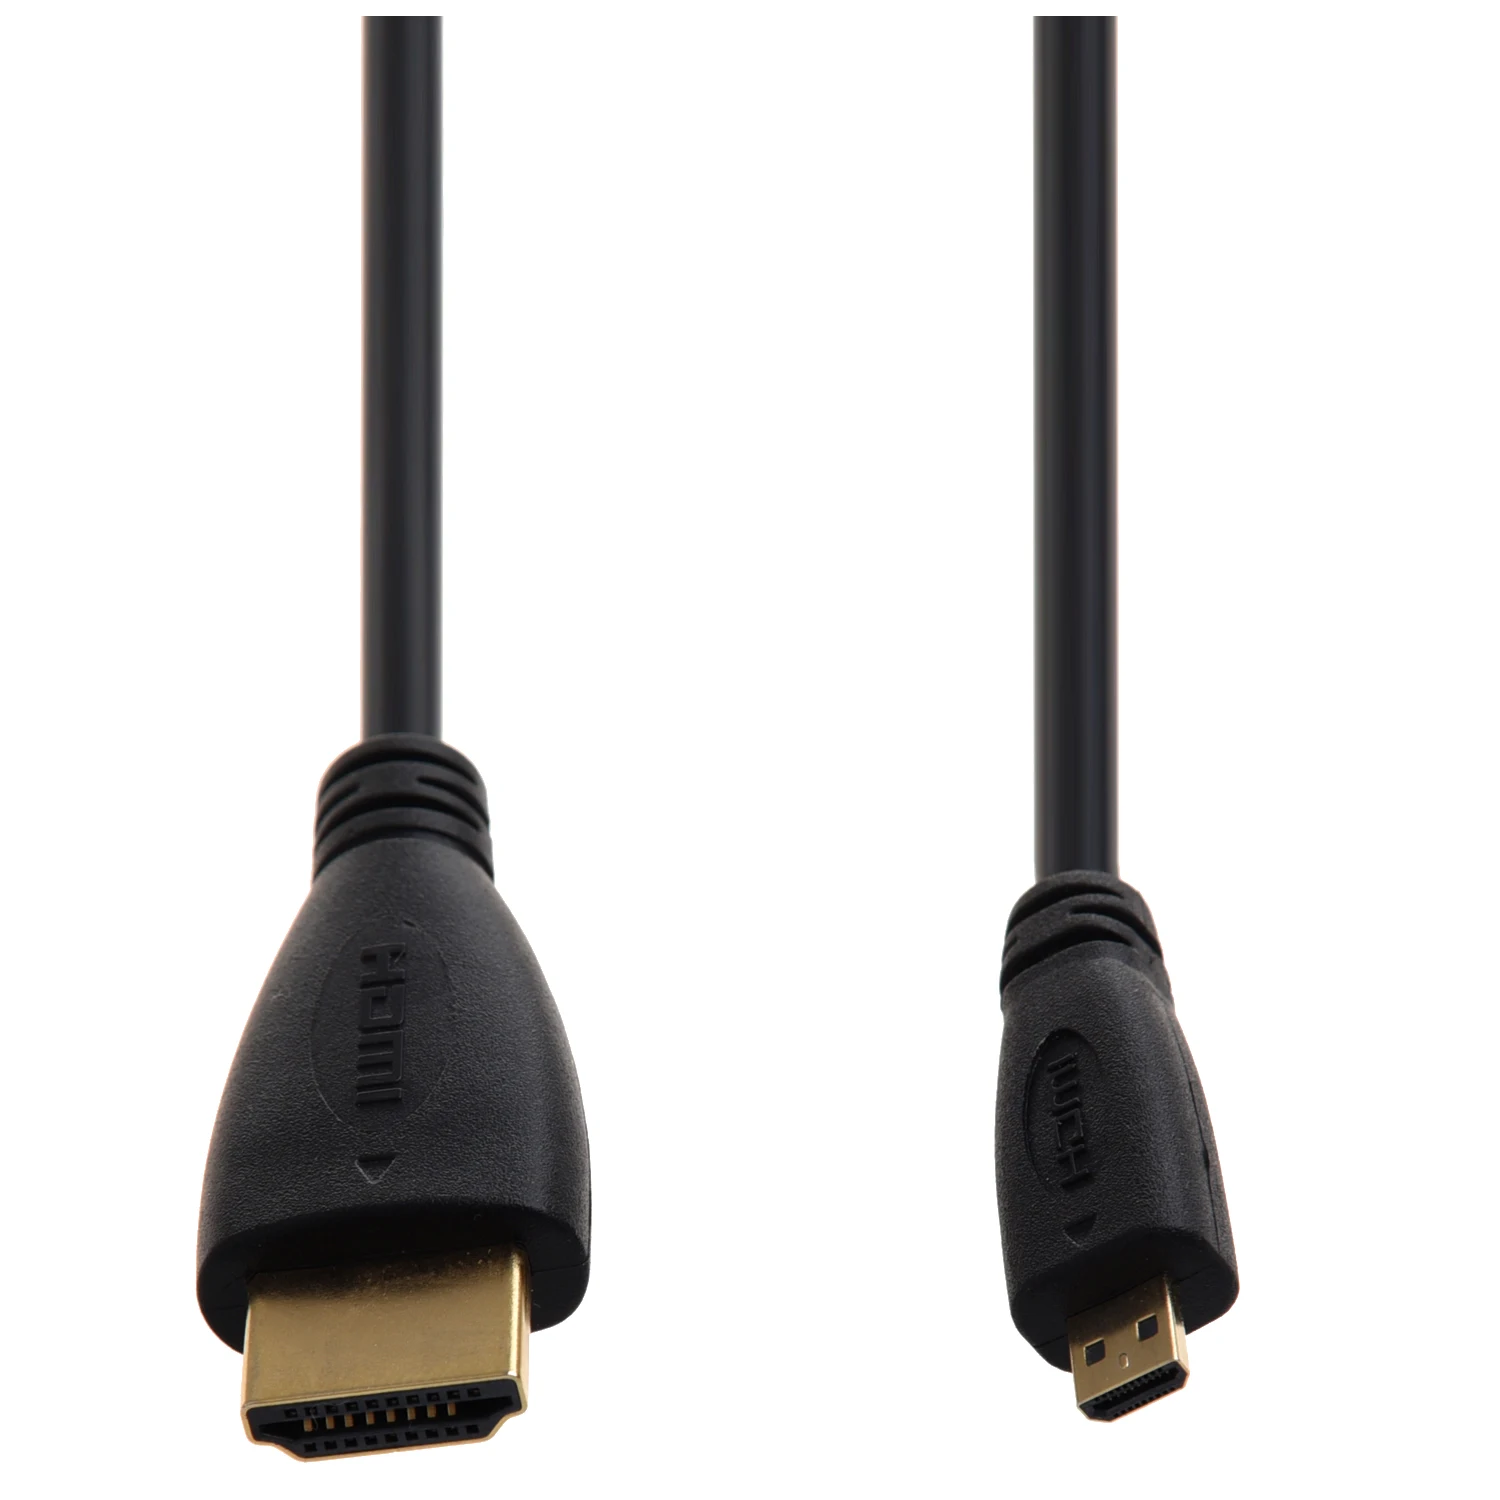 Топ предложения HDMI к Micro HDMI кабель(6 футов